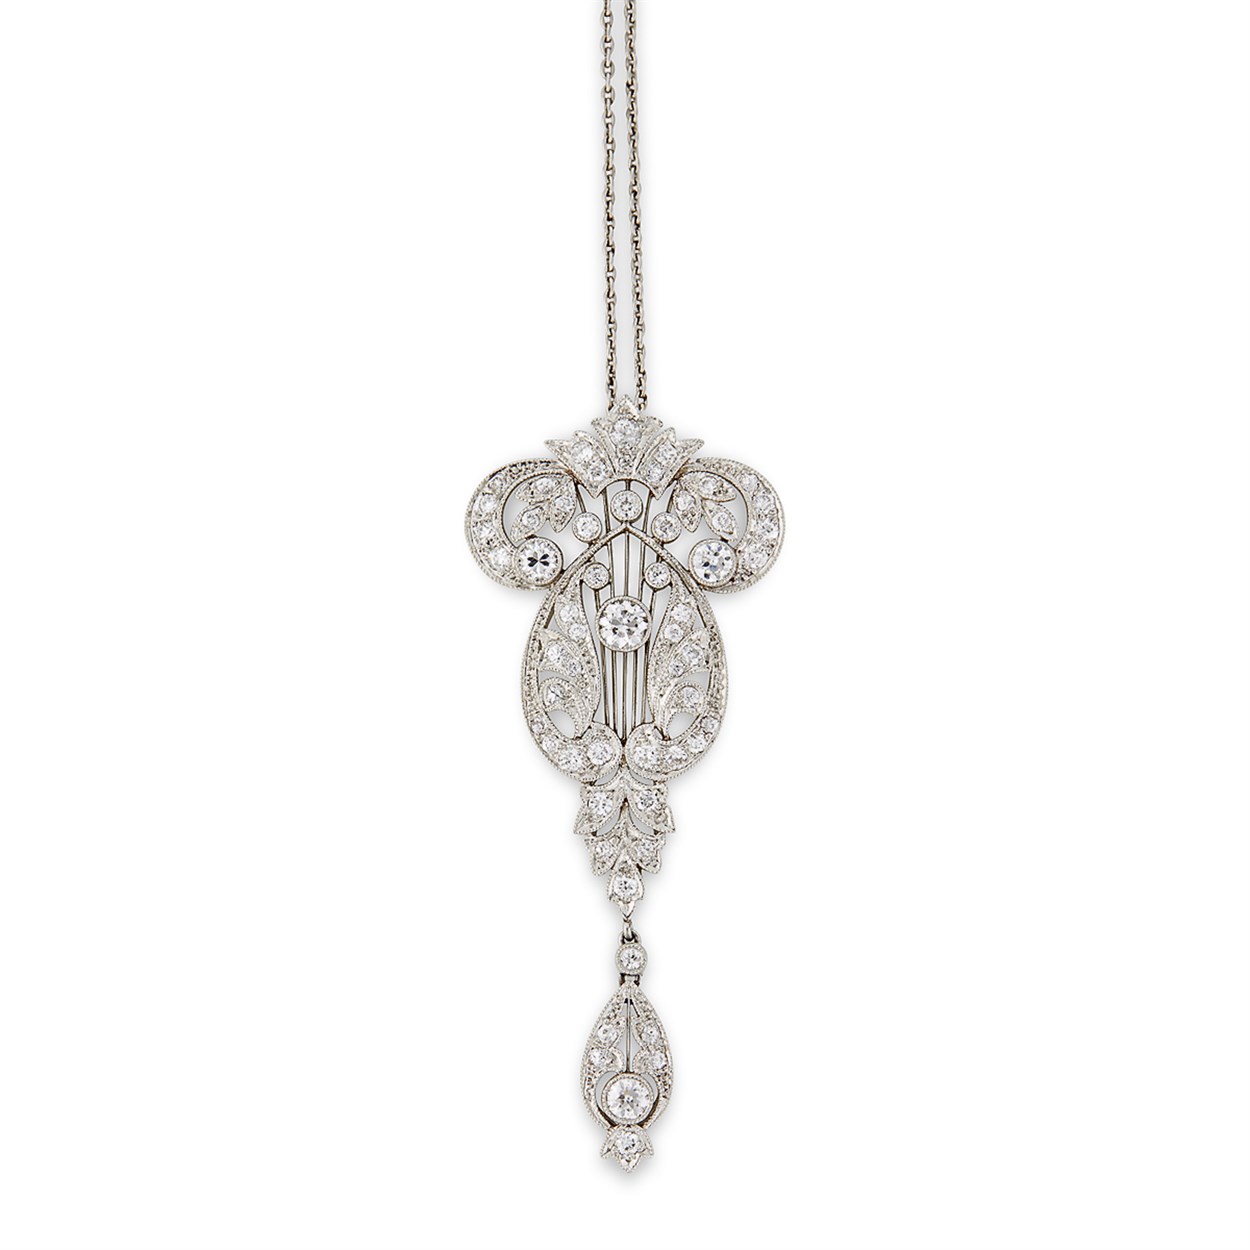 Lot 34 - A Belle Époque diamond and platinum pendant with platinum chain